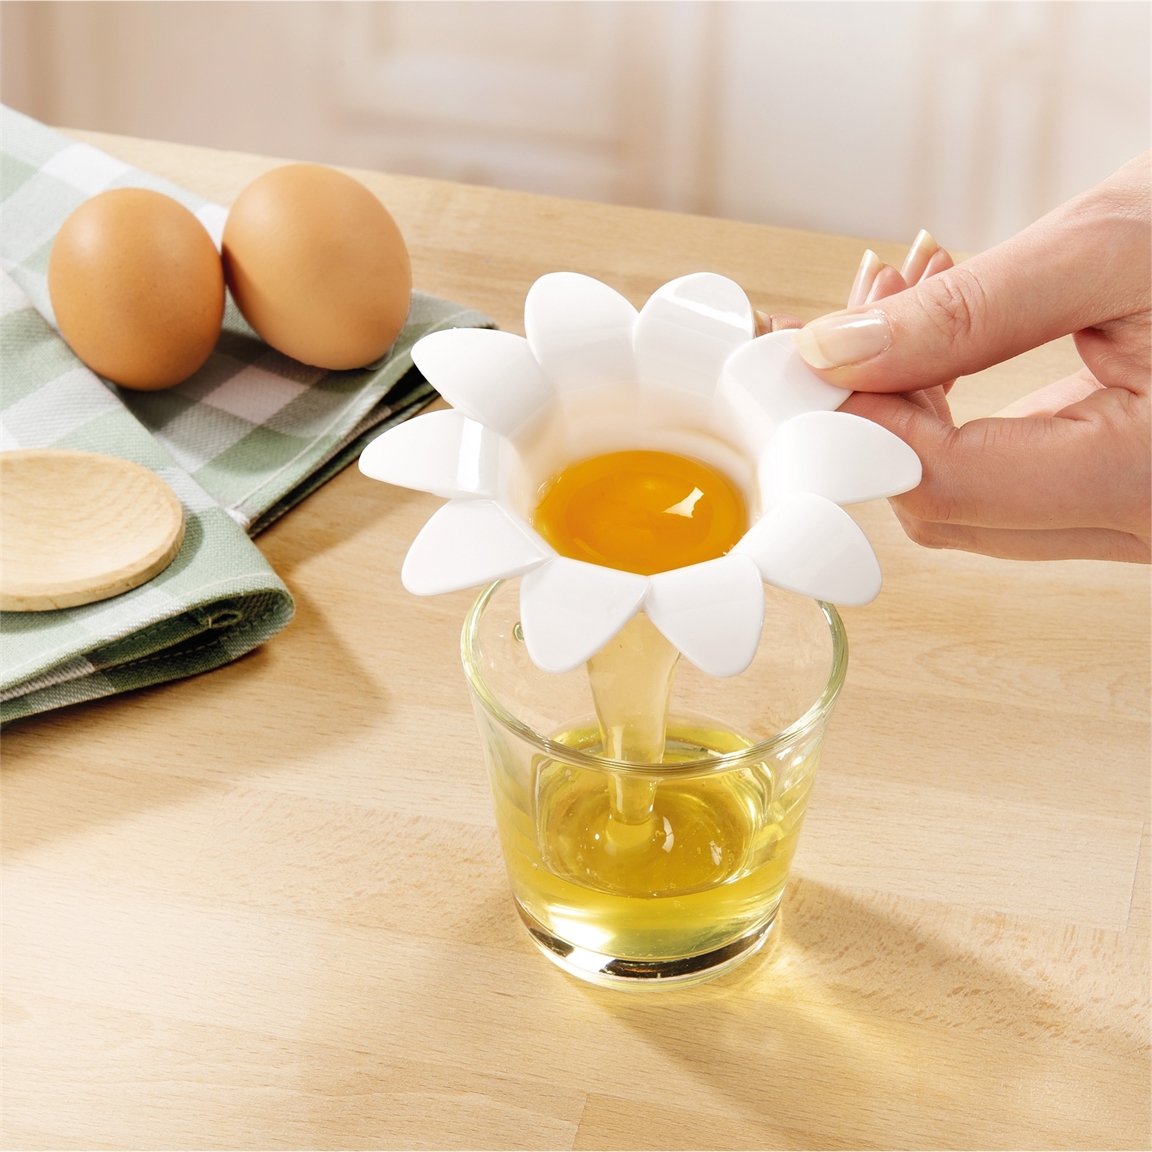 Daisy est un accessoire pour séparer le jaune du blanc d'œuf.